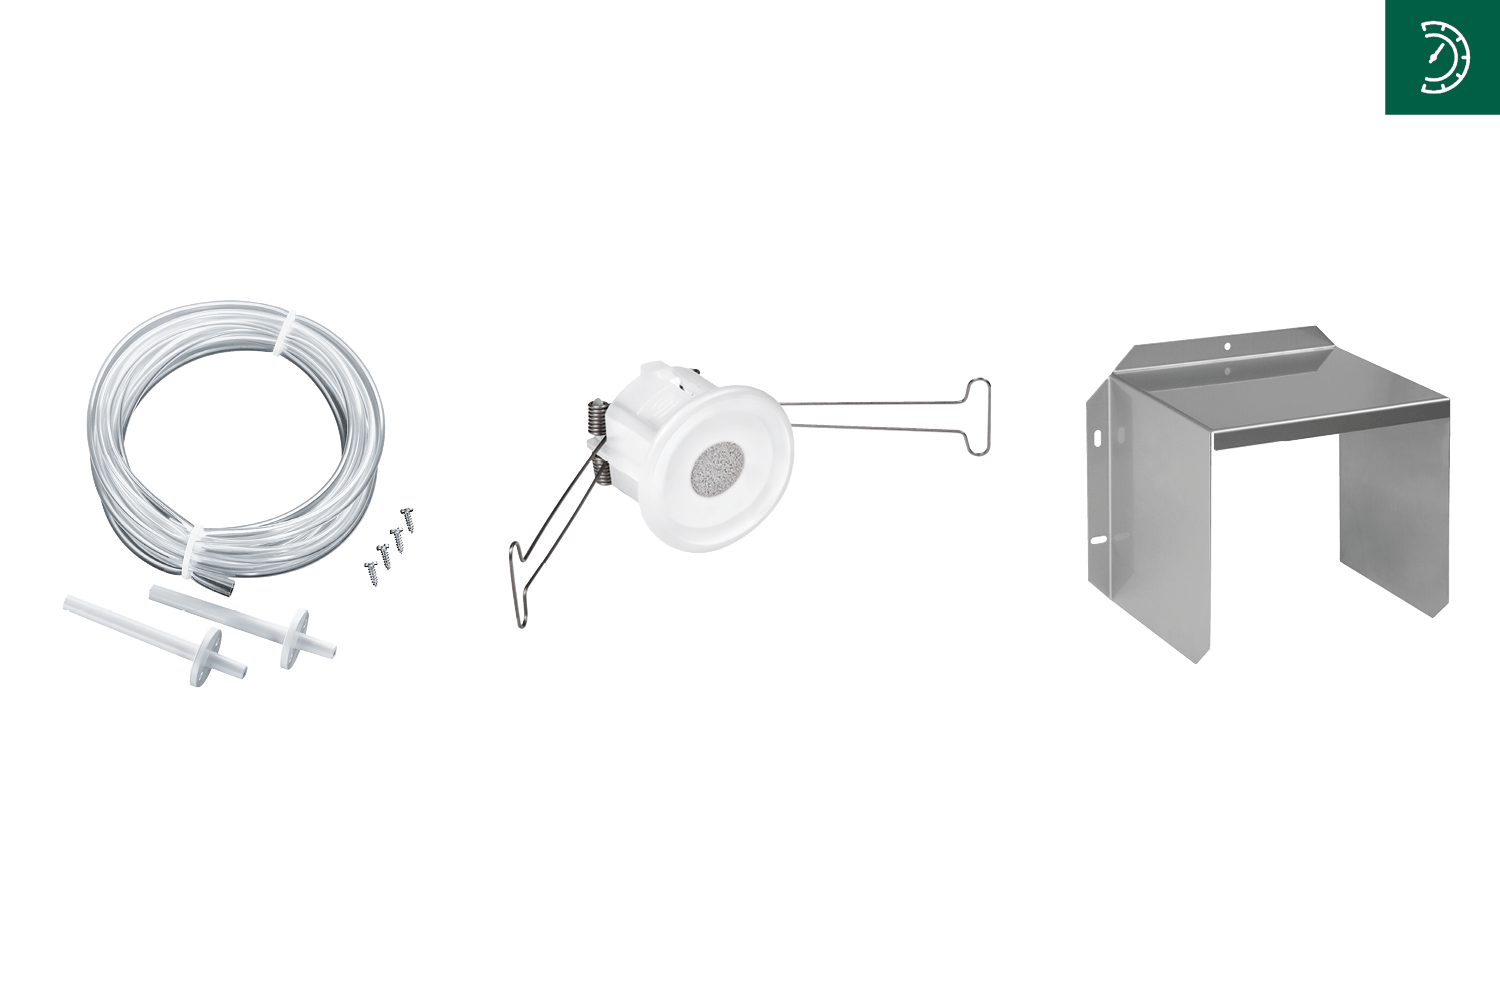 Bild mit Sinterfiltern, Montageflansch und Wetterschutz über Gerät auf grauem Hintergrund, Oben rechts Drucksymbol